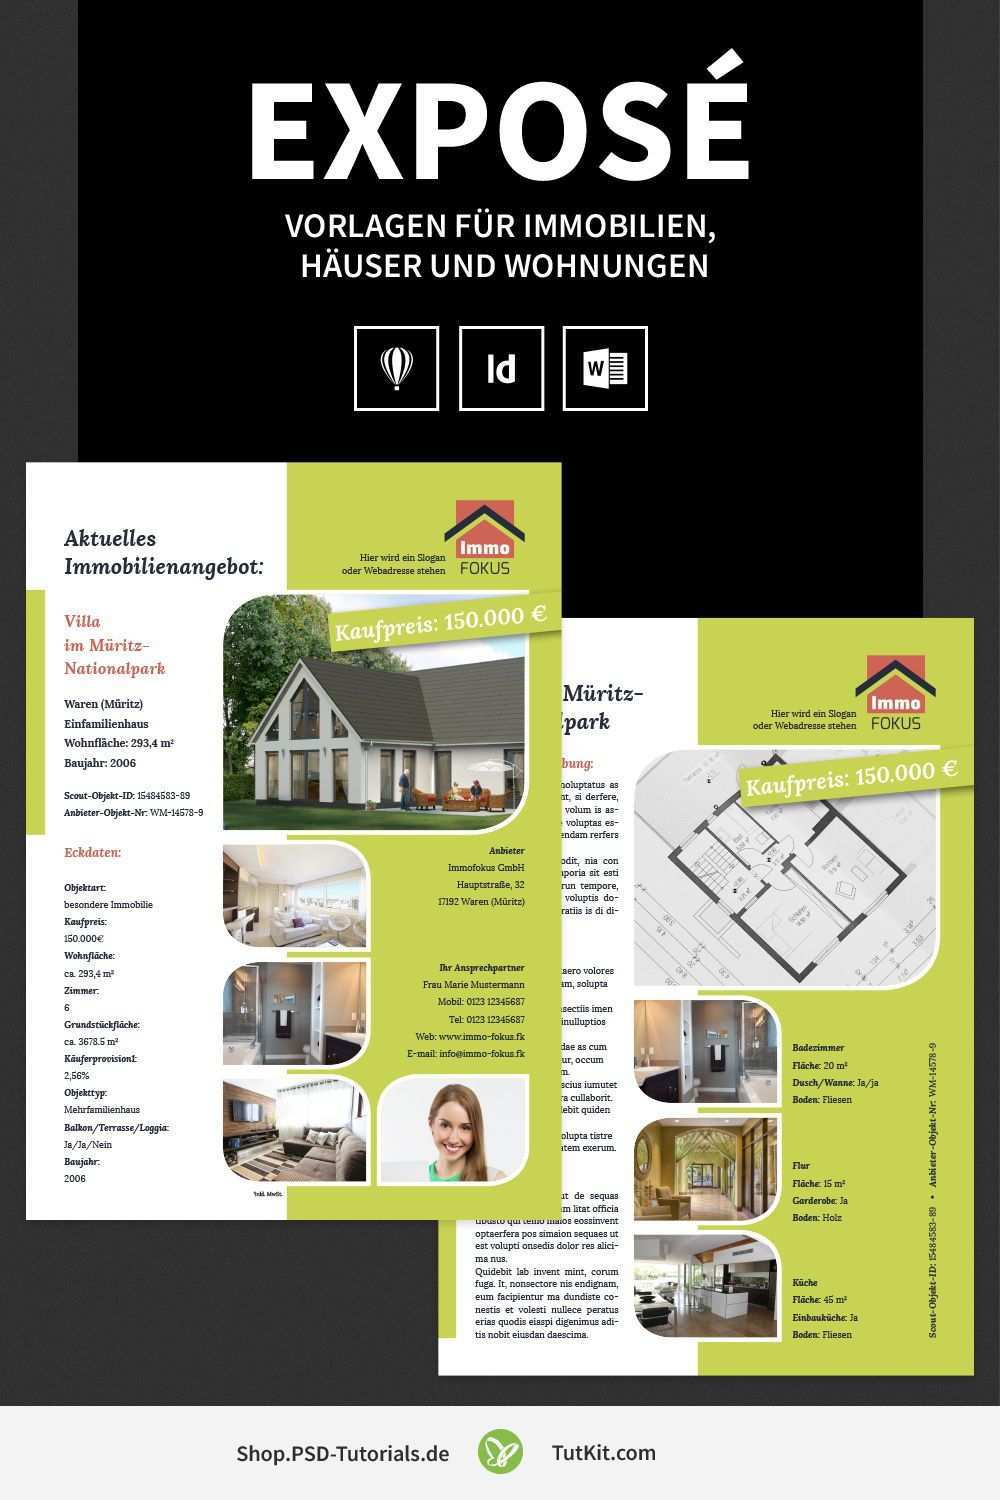 Hochwertige Immobilien Expose Vorlagen Flugblatt Design Immobilien Vorlagen